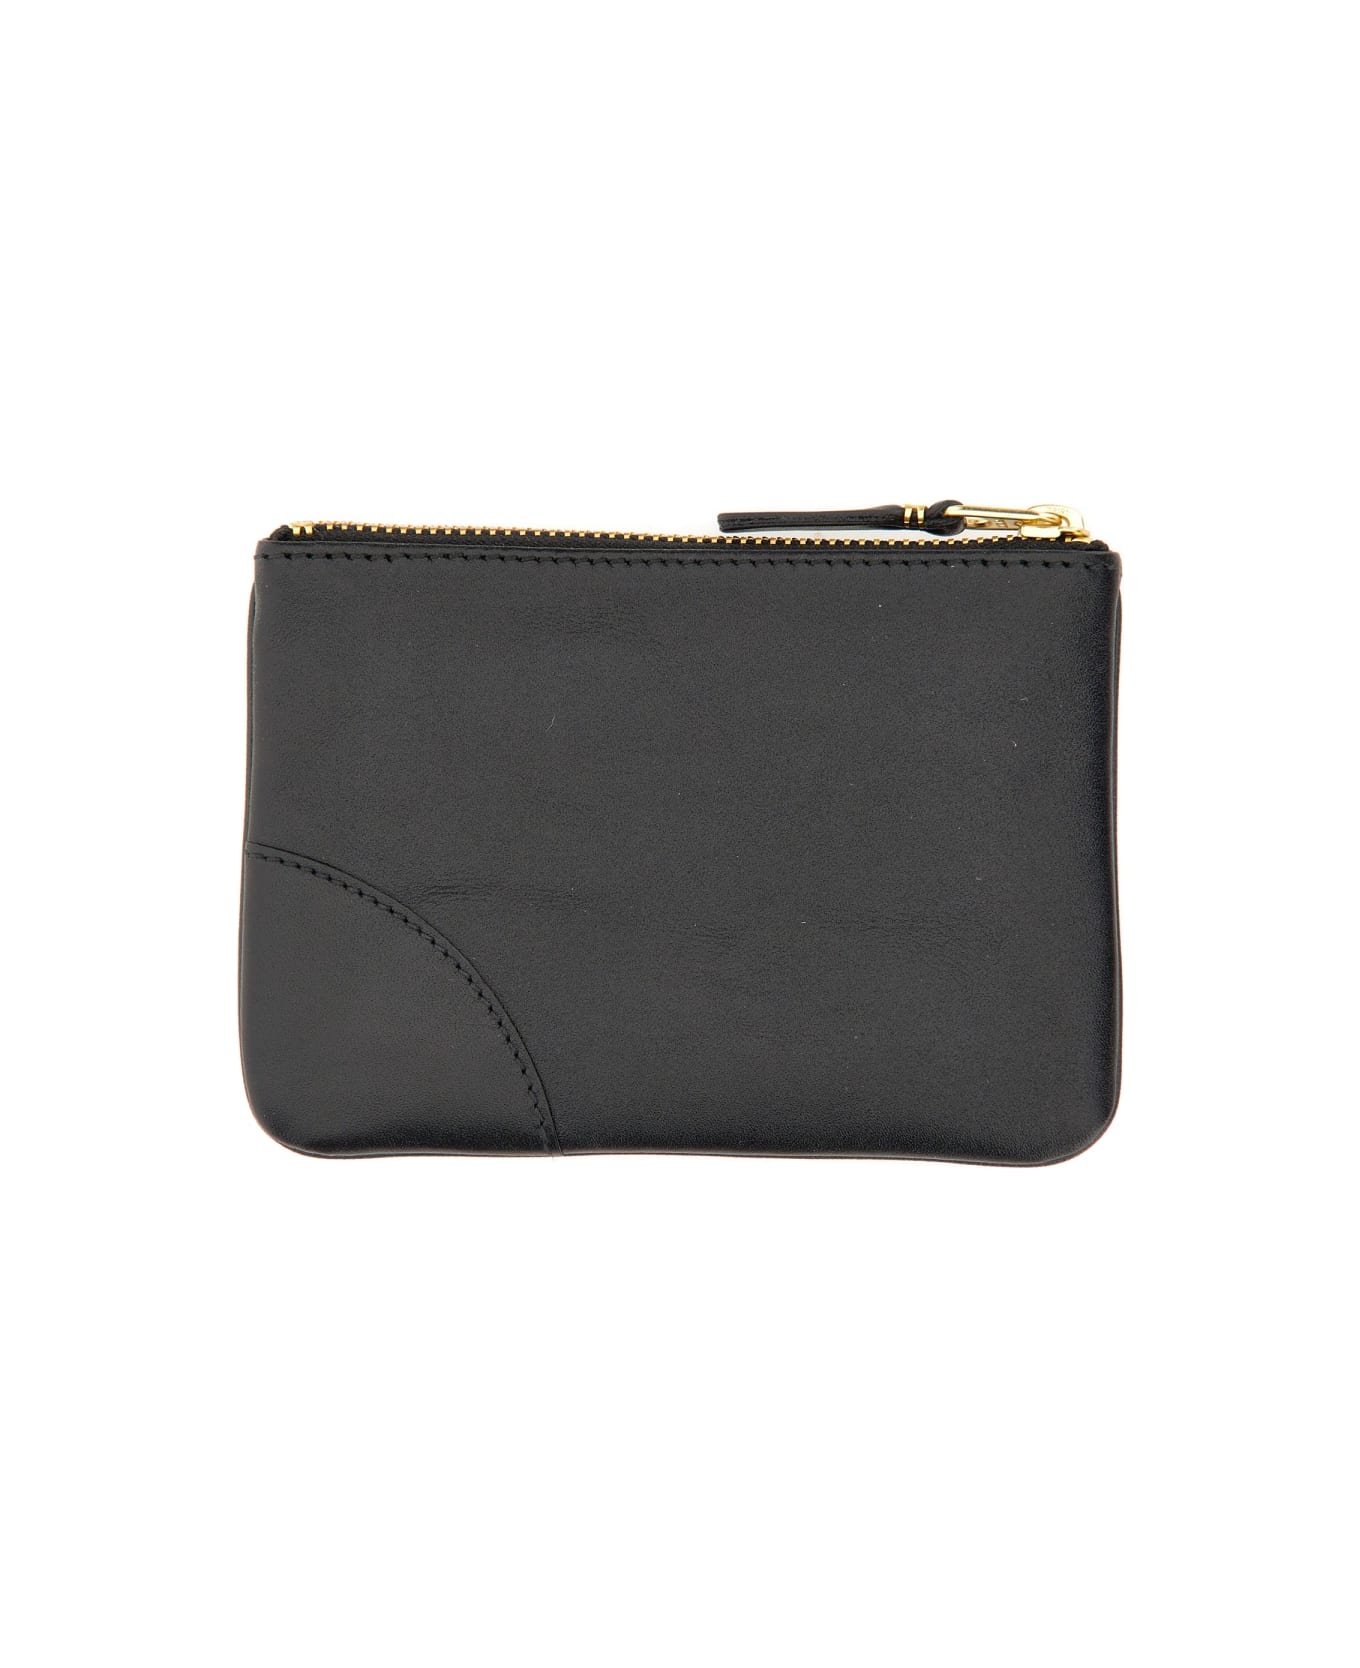 Comme des Garçons Wallet Small Clutch With Zipper - Black 財布